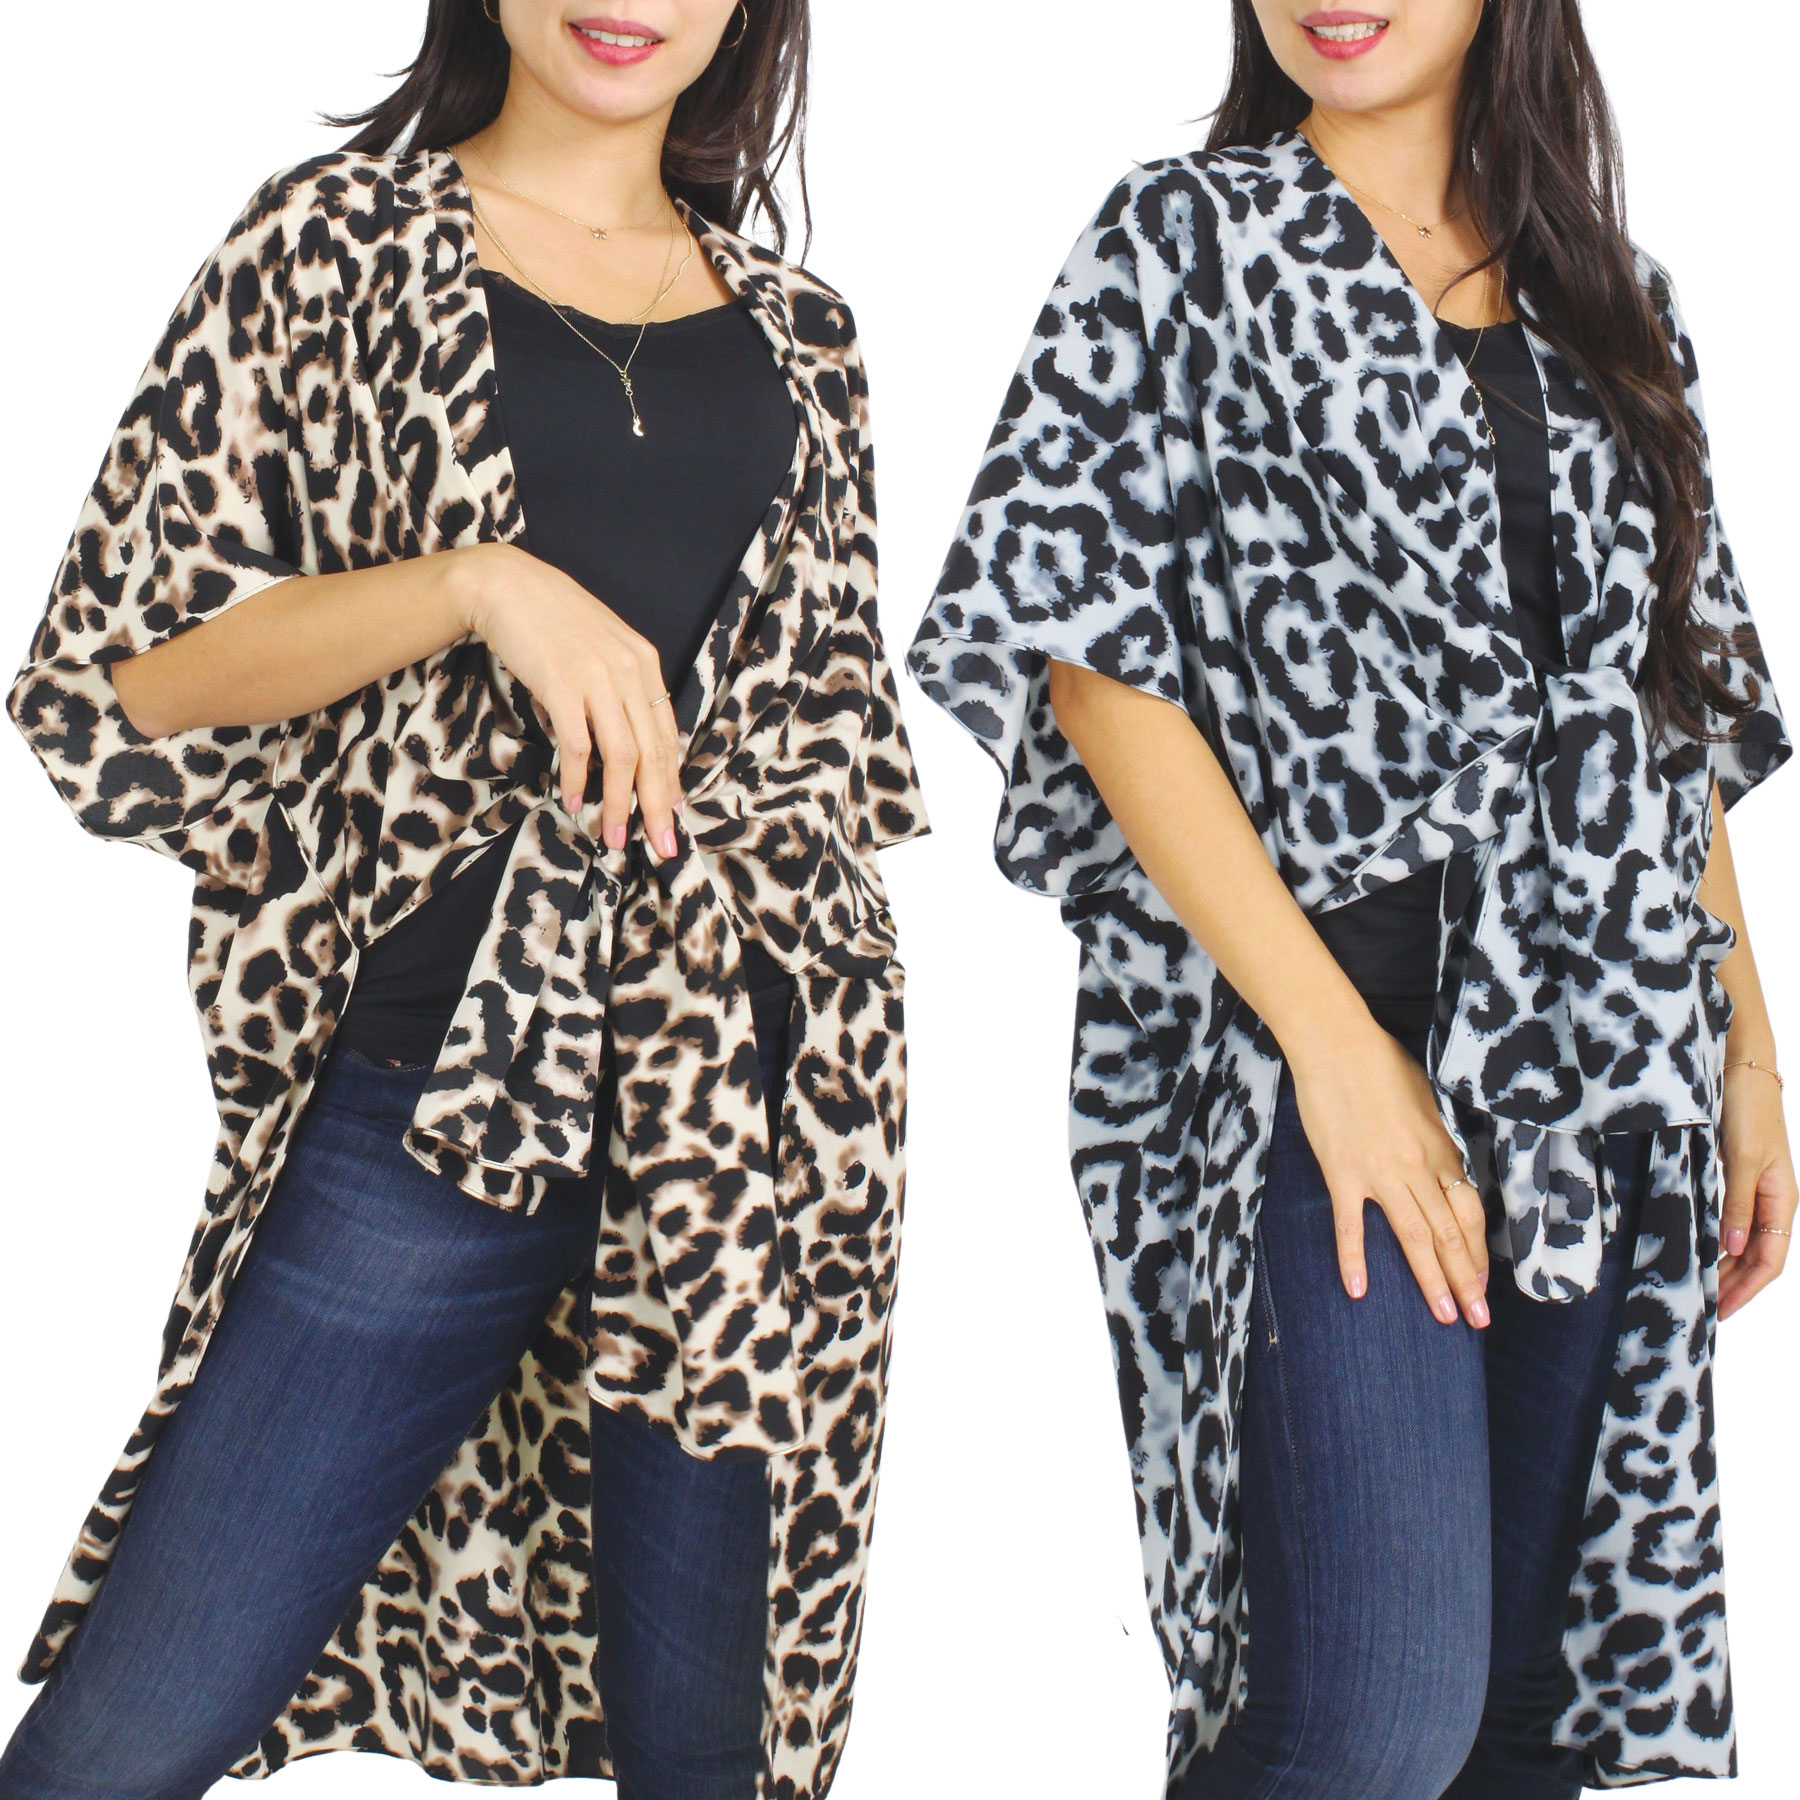 Kimono Style - Leopard Print 9930